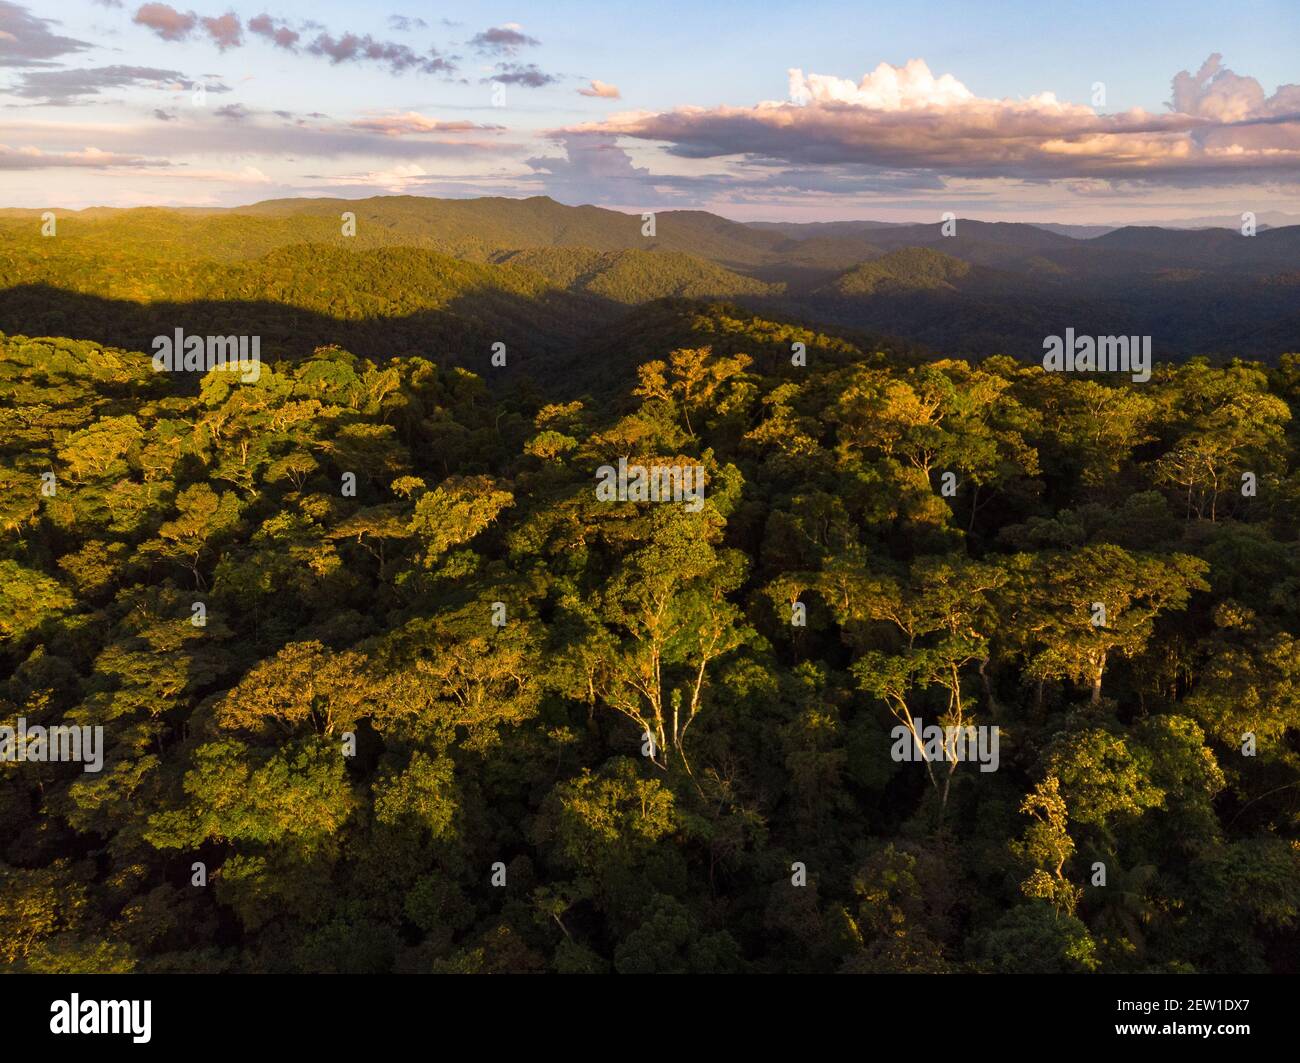 Prise de vue aérienne de la forêt tropicale de l'Atlantique dans le sud de l'État de São Paulo, au sud-est du Brésil Banque D'Images